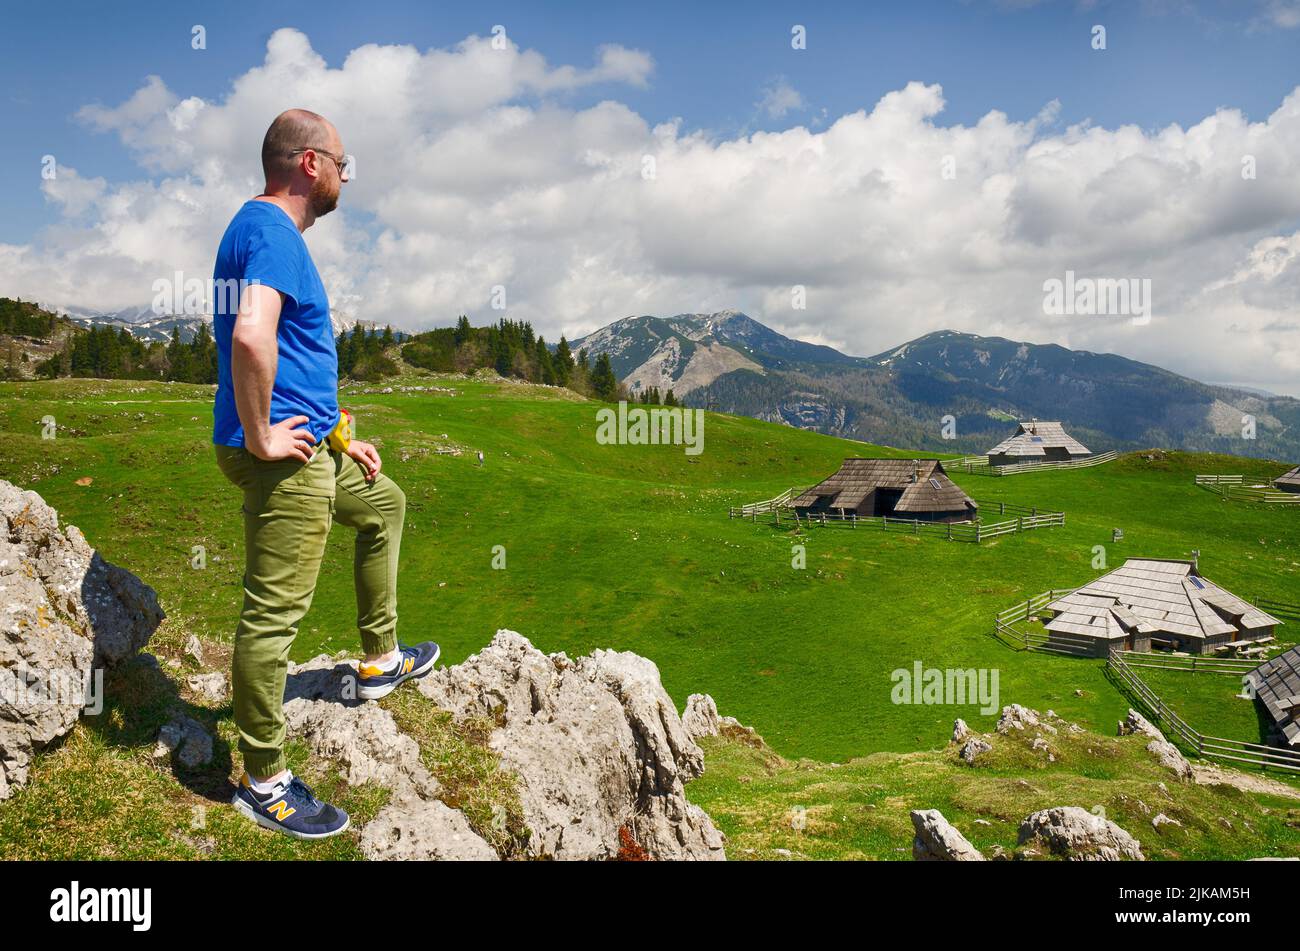 Der Mensch genießt den Blick auf das alpine Dorf in den Bergen. Velika Planina oder großes Weideplateau in den Kamnik Alpen, Slowenien. Stockfoto